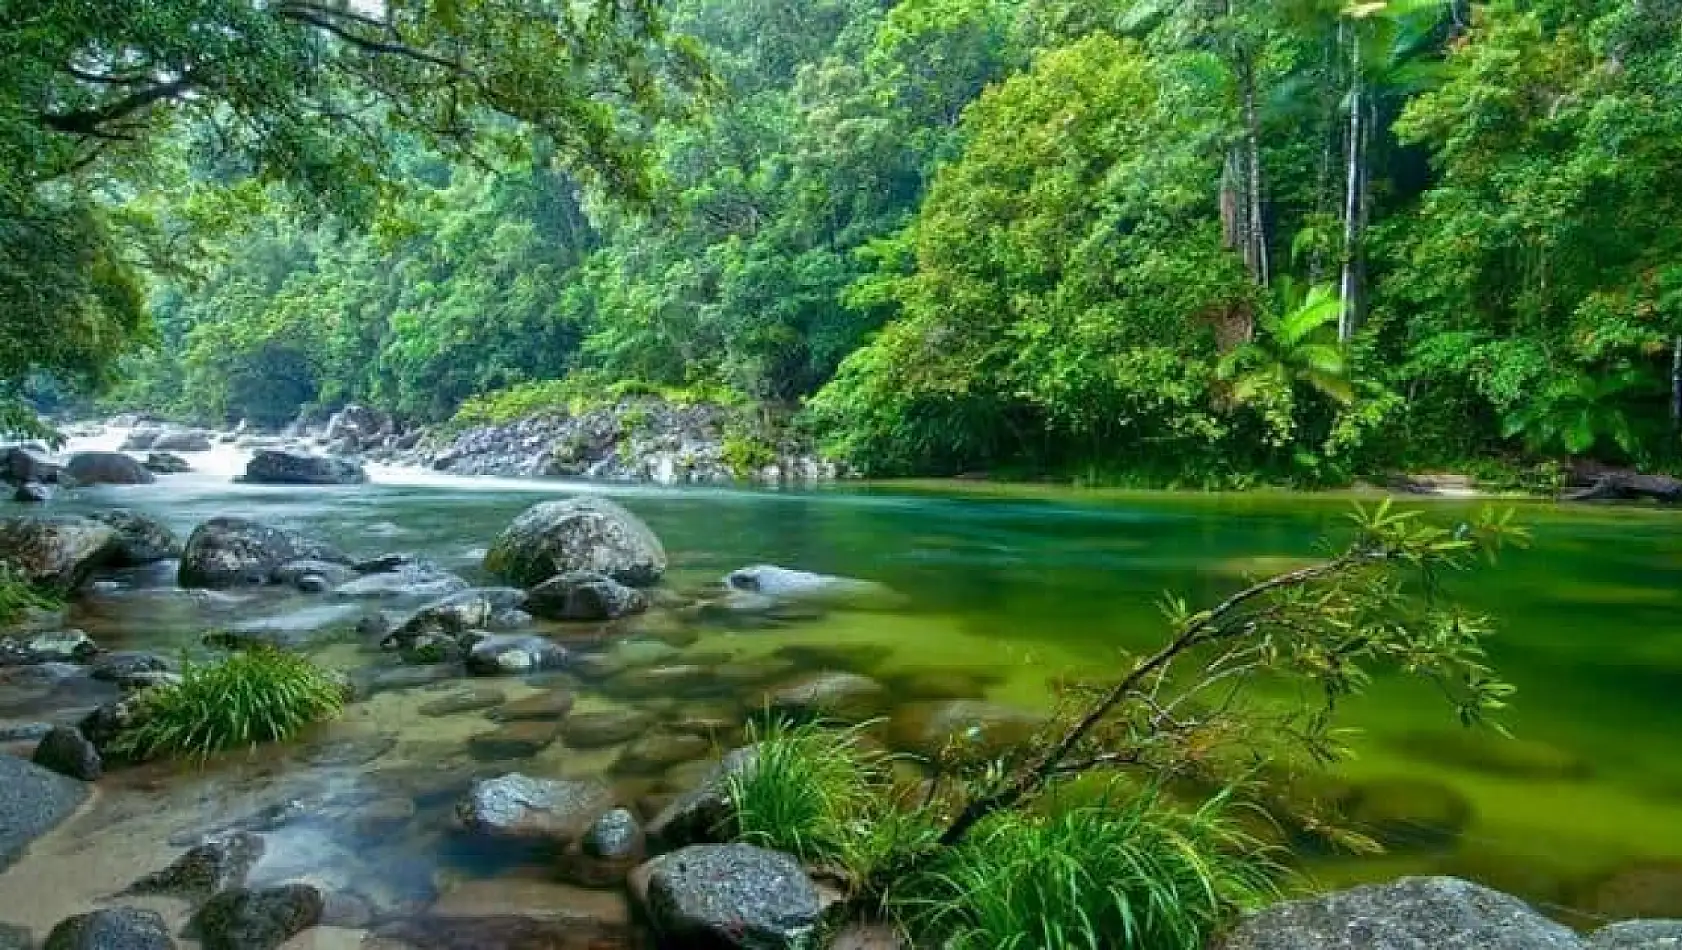 Avustralya'nın yeşil cenneti: Daintree yağmur ormanı